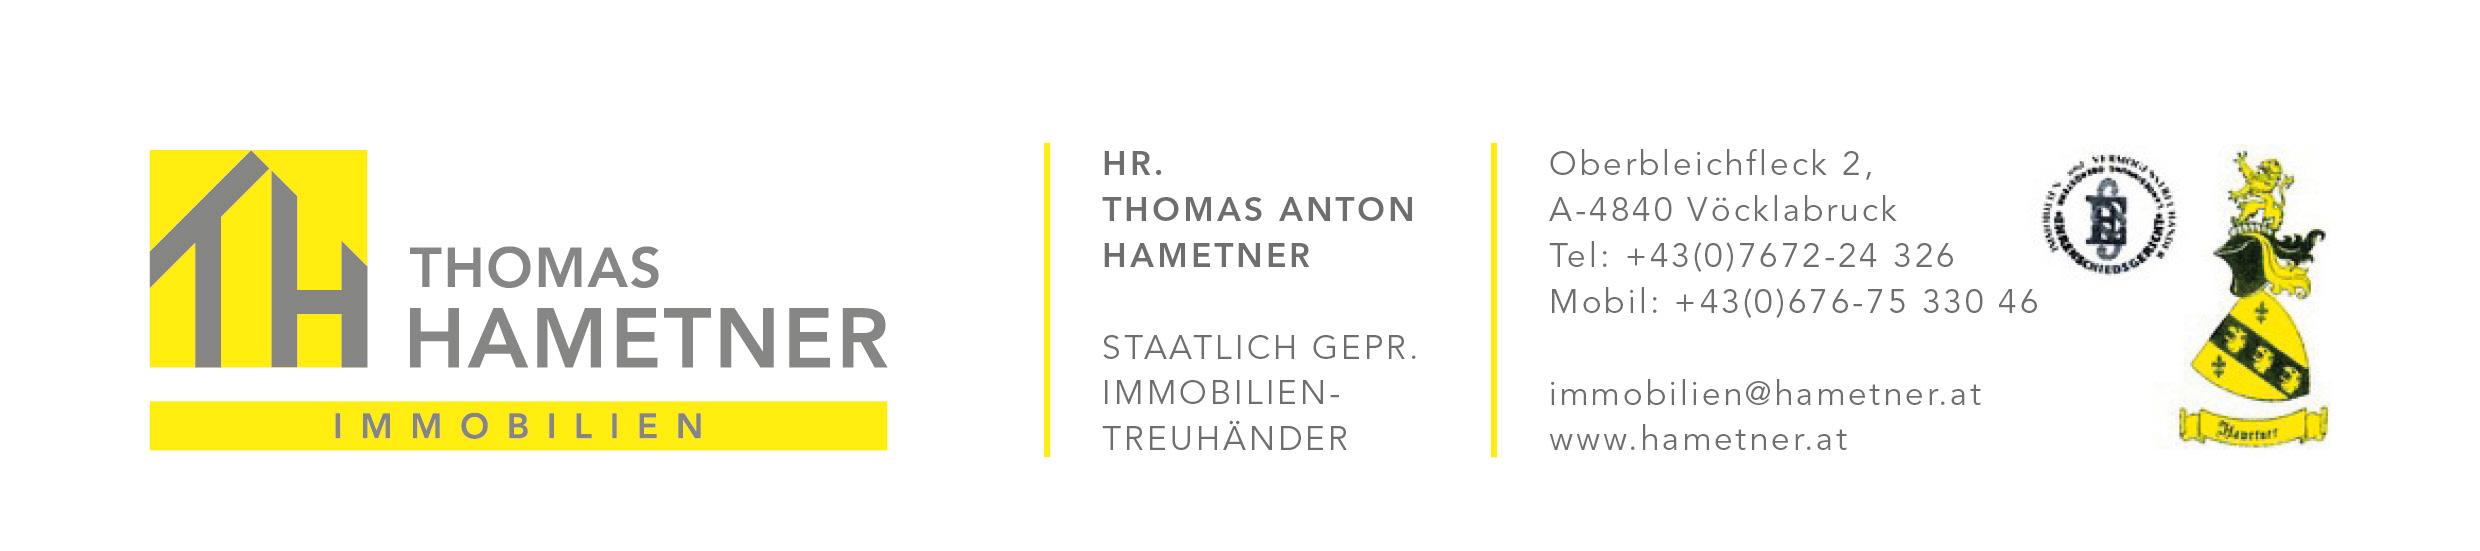 Thomas A. Hametner Immobilien, Oberbleichfleck 2 in Vöcklabruck